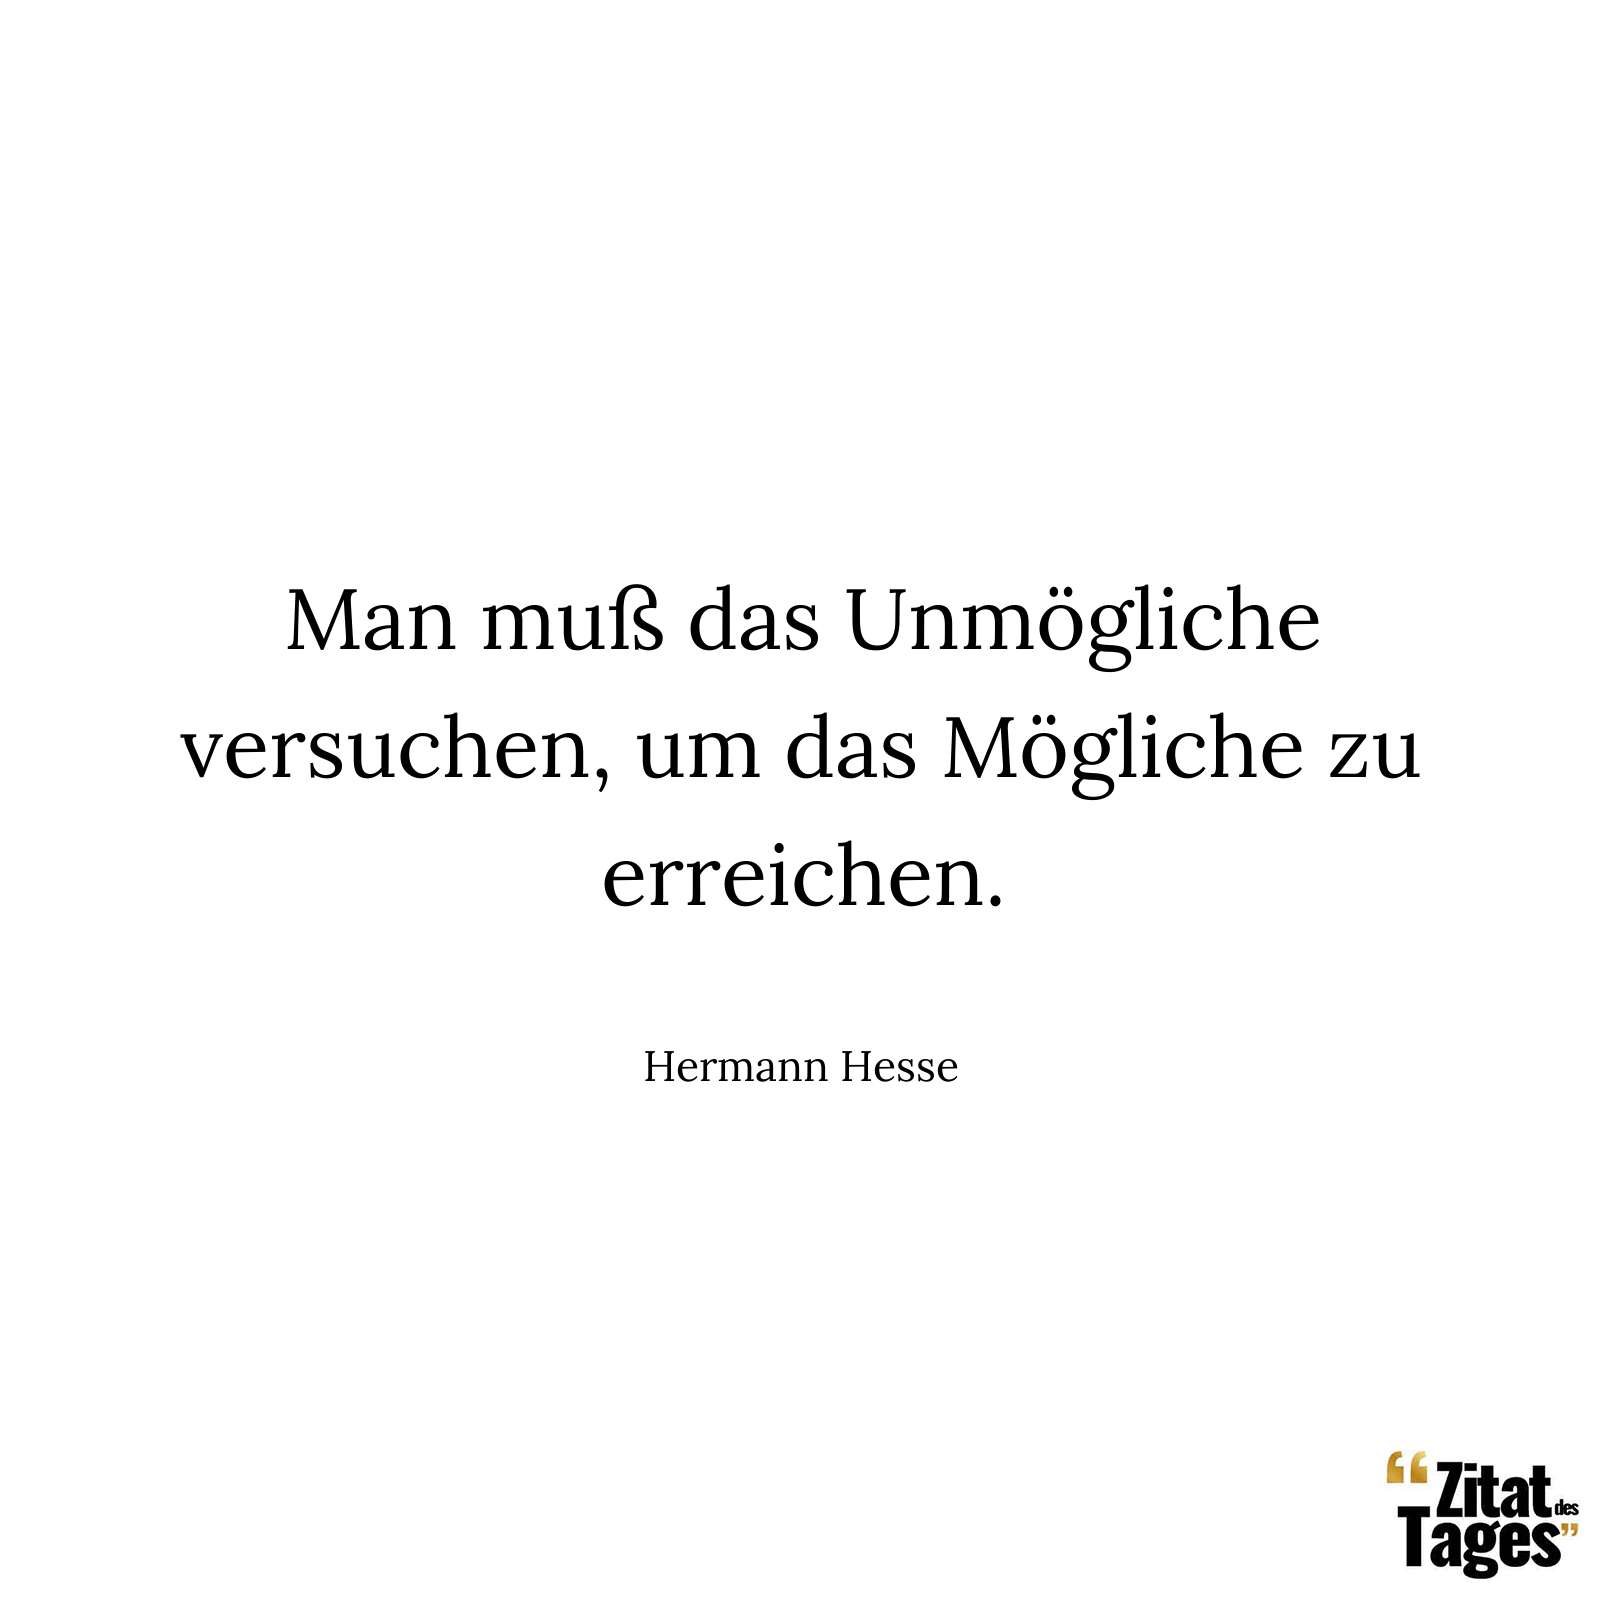 Man muß das Unmögliche versuchen, um das Mögliche zu erreichen. - Hermann Hesse